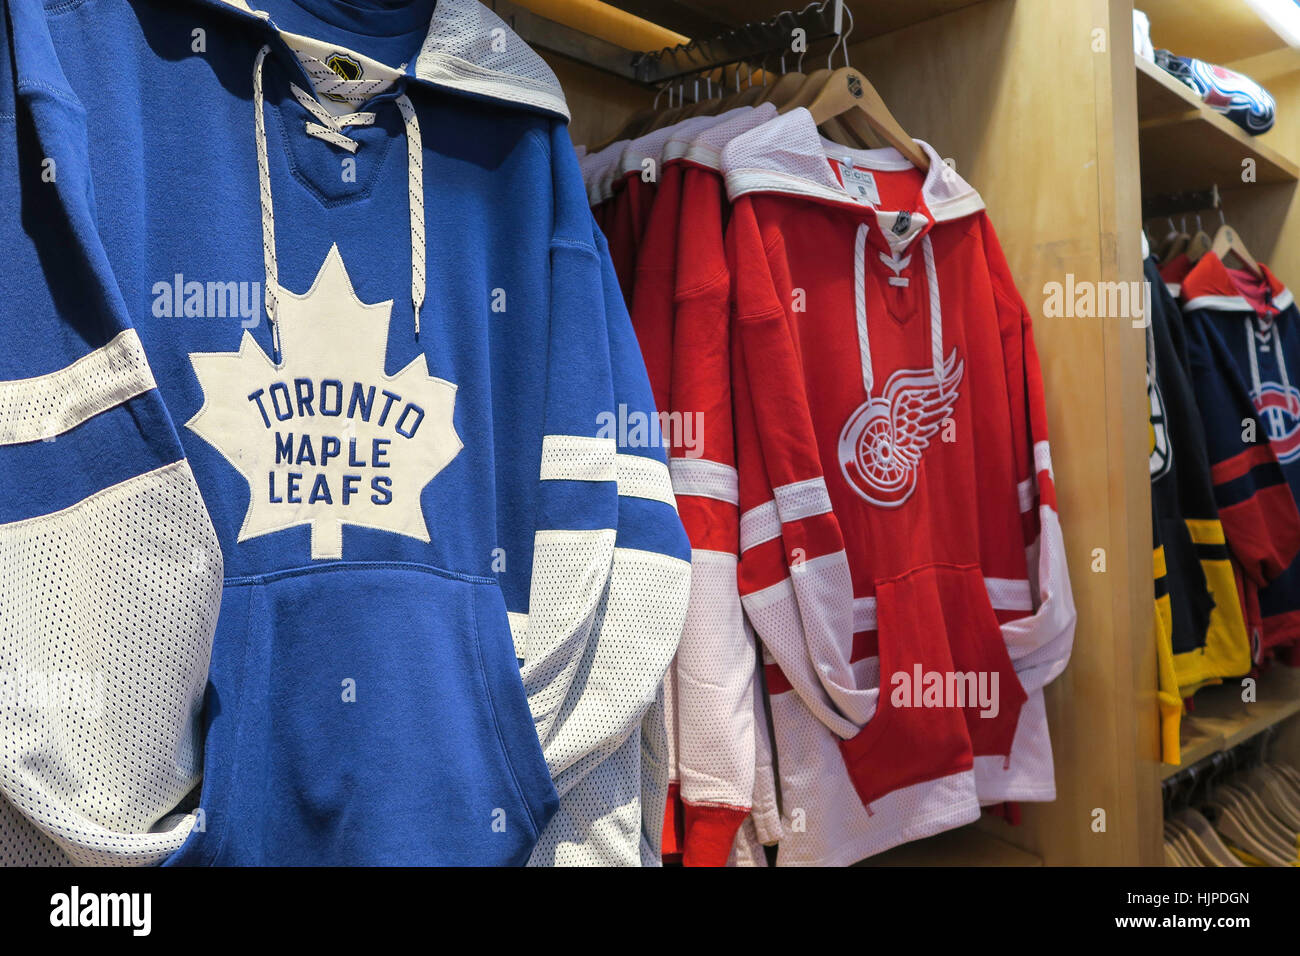 NHL Powered by Reebok Store, 1185 Avenida de las Américas, en la esquina de  47th Street, Nueva York Fotografía de stock - Alamy